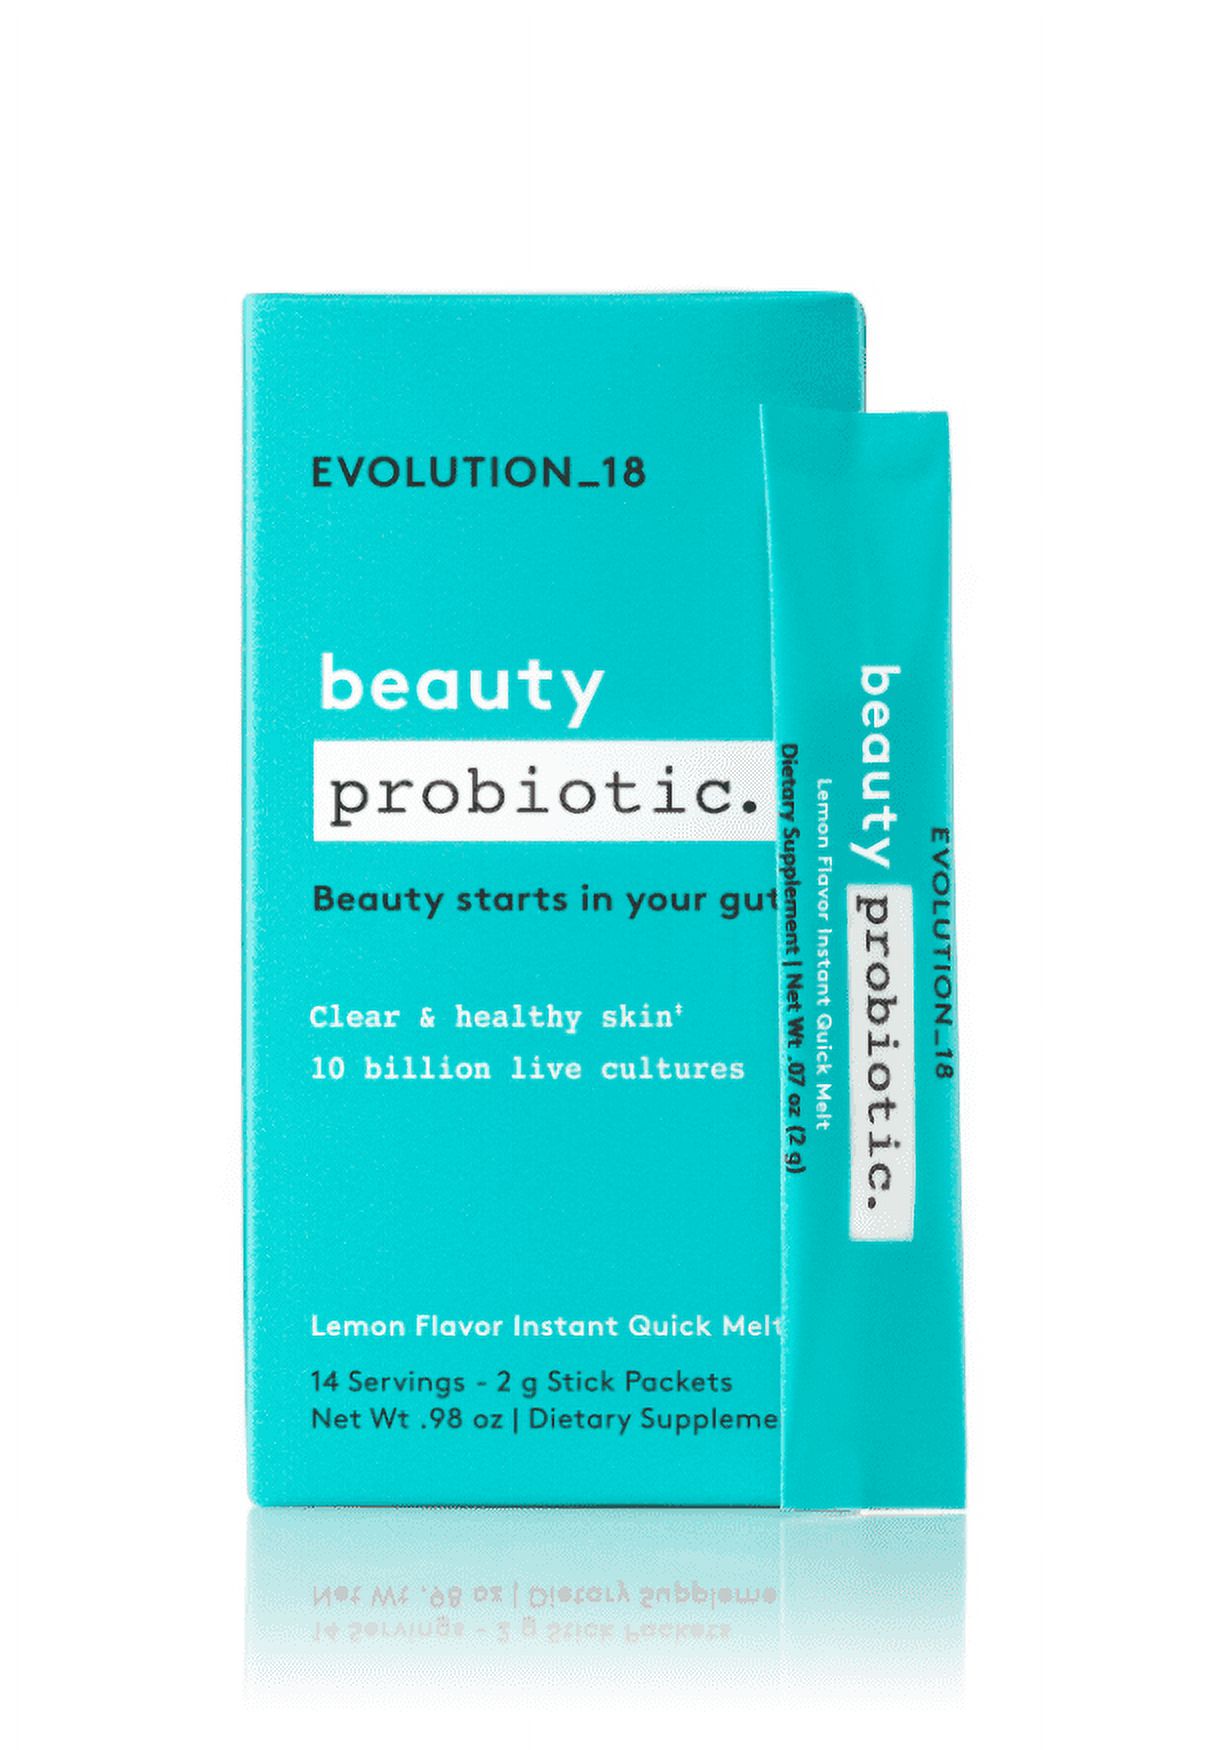 Evolution_18 Probiotic Supplements, 1 Stick, 0.98 oz - image 1 of 6